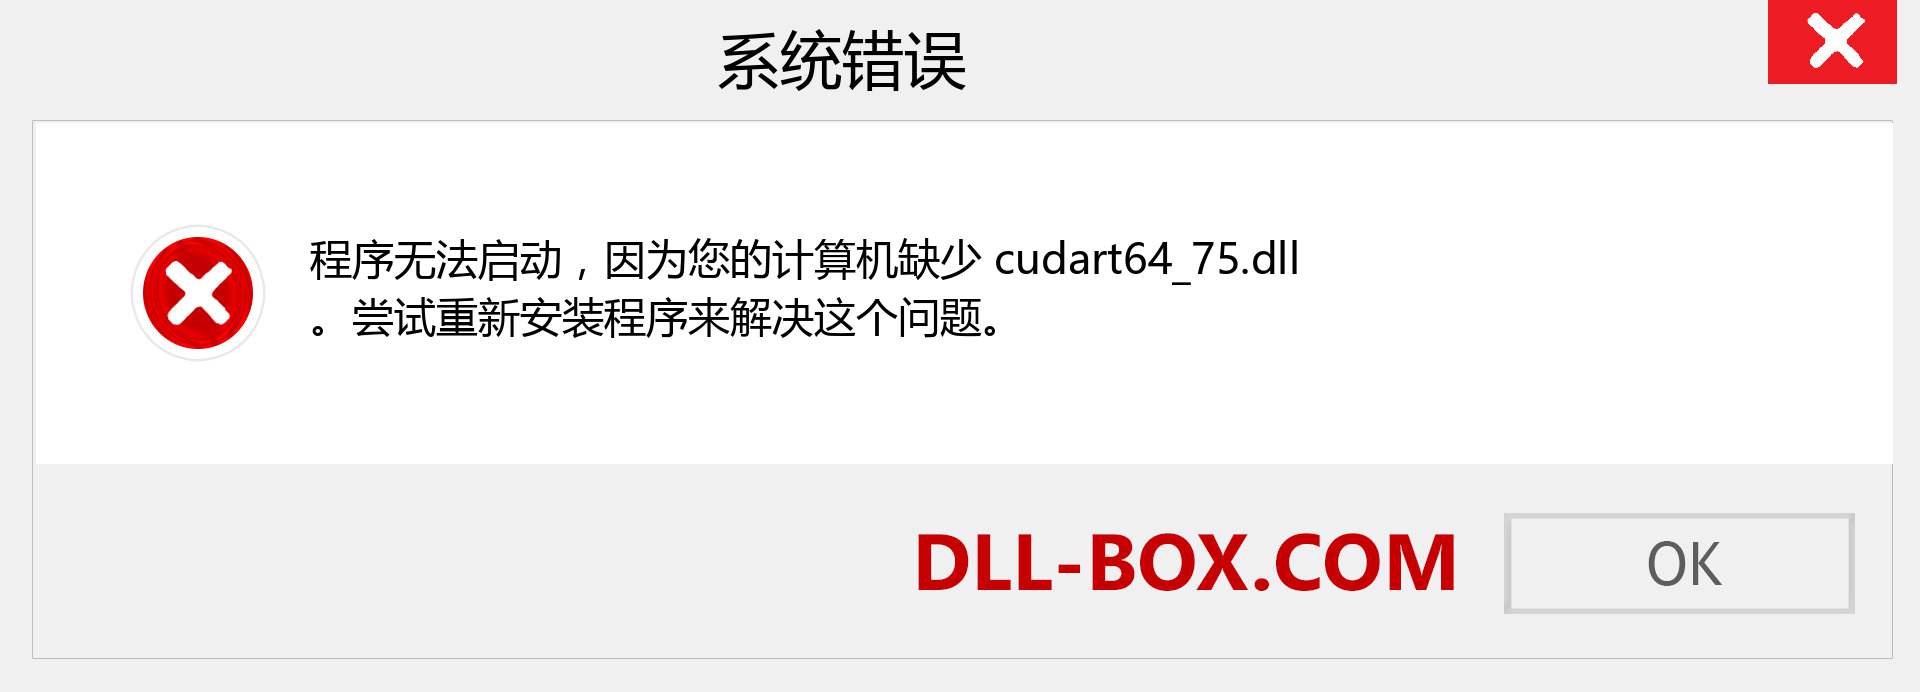 cudart64_75.dll 文件丢失？。 适用于 Windows 7、8、10 的下载 - 修复 Windows、照片、图像上的 cudart64_75 dll 丢失错误